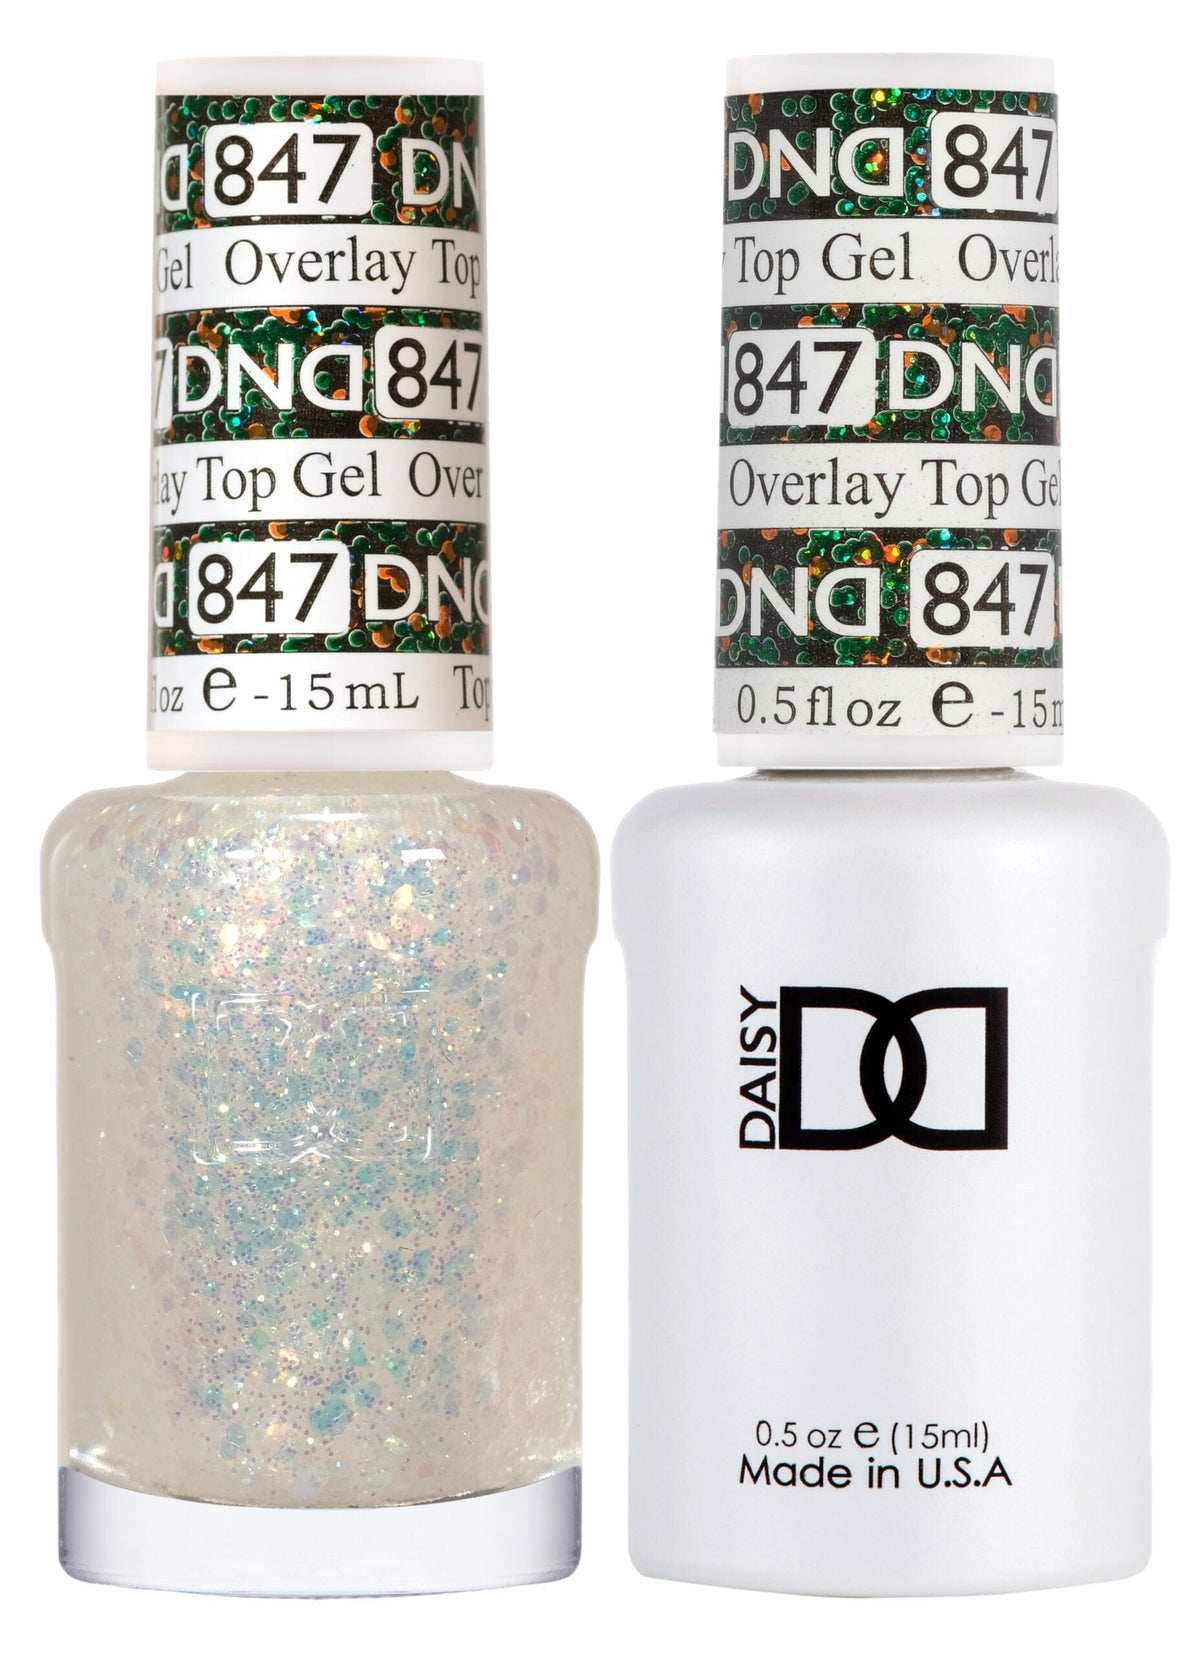 DND Duo Gel Matching Color 847 Overlay Top Gel